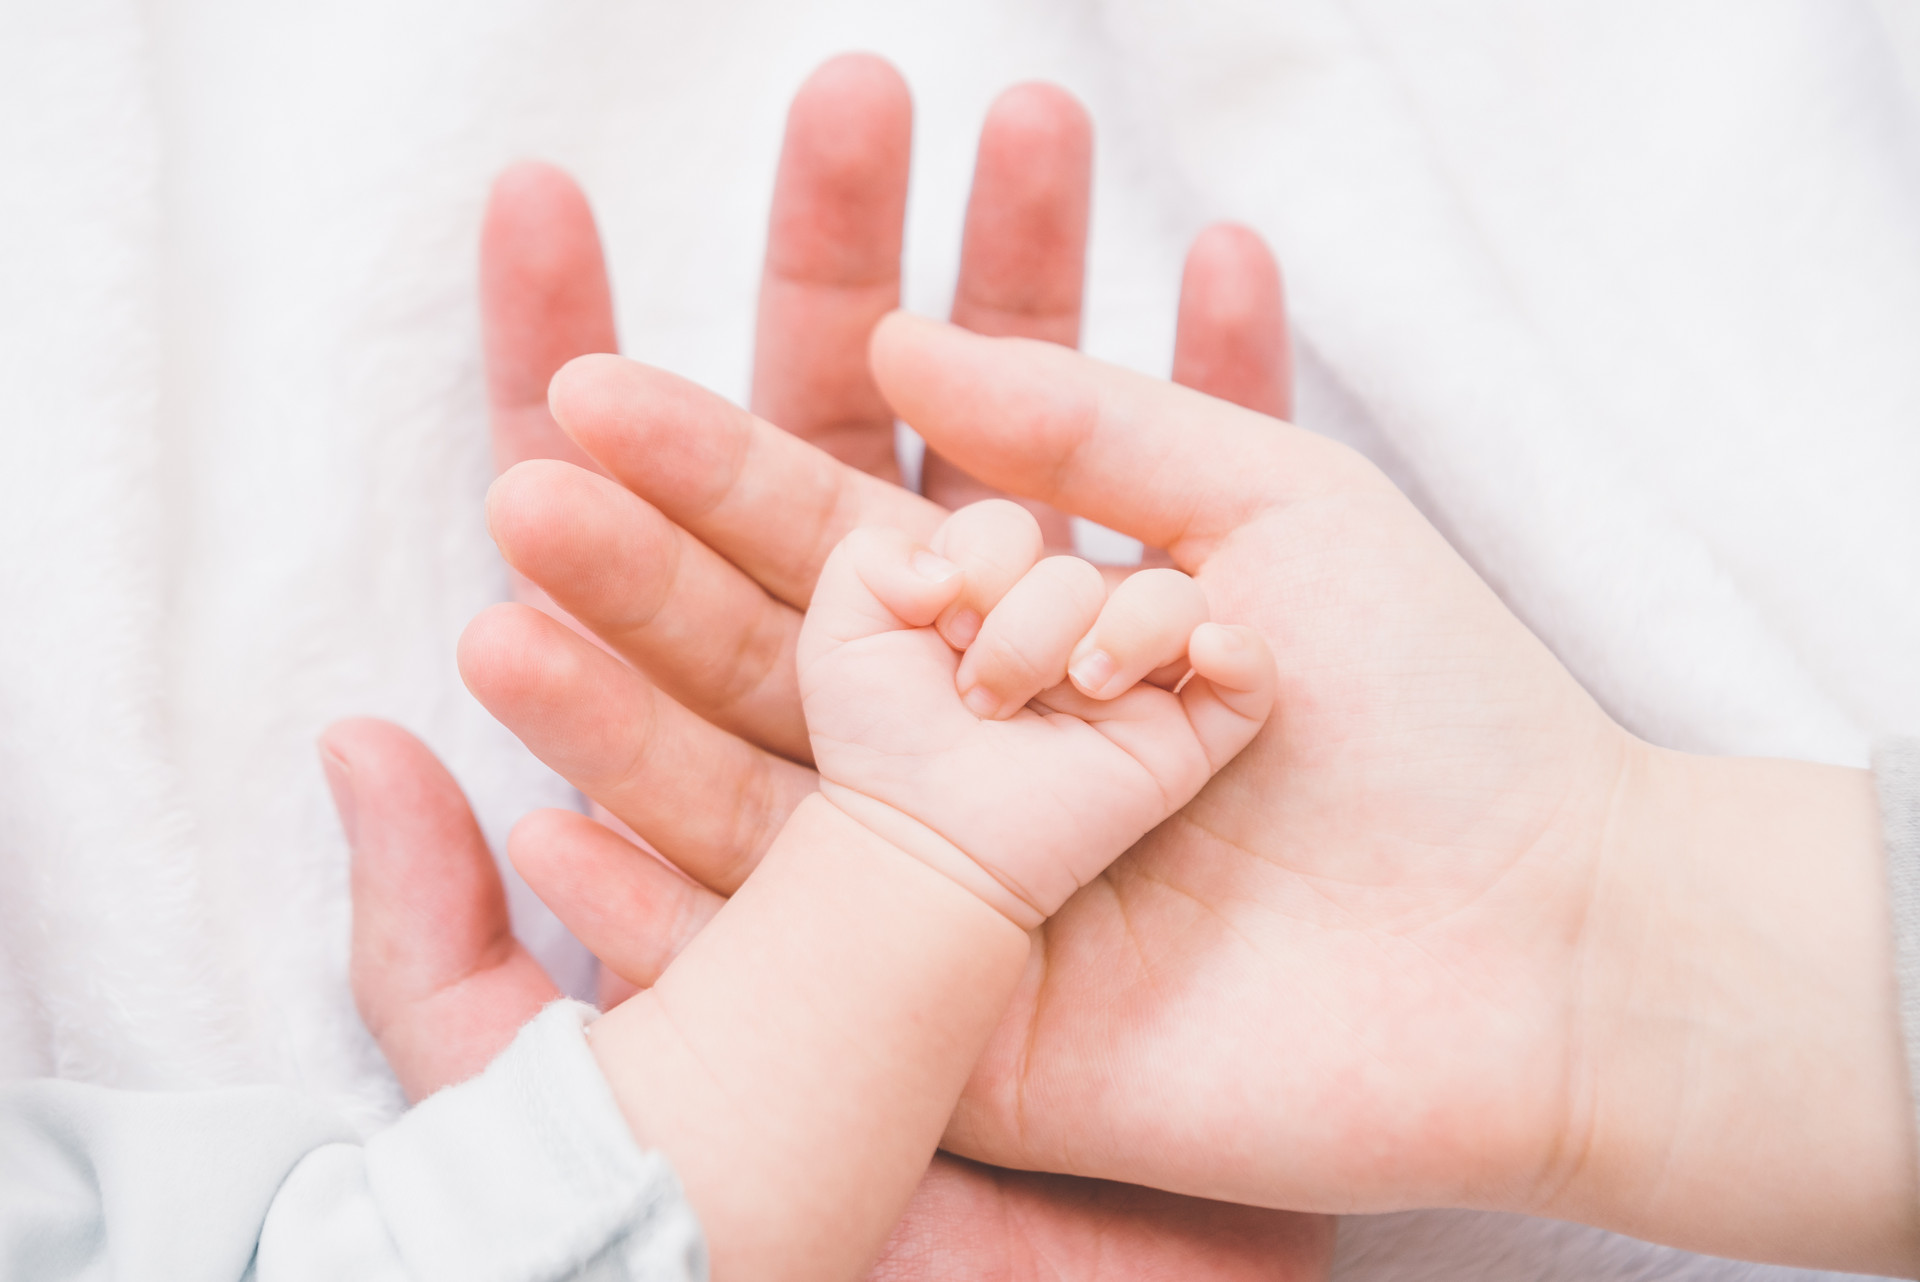 郑州新生儿超3个月上户口需出具病历病案